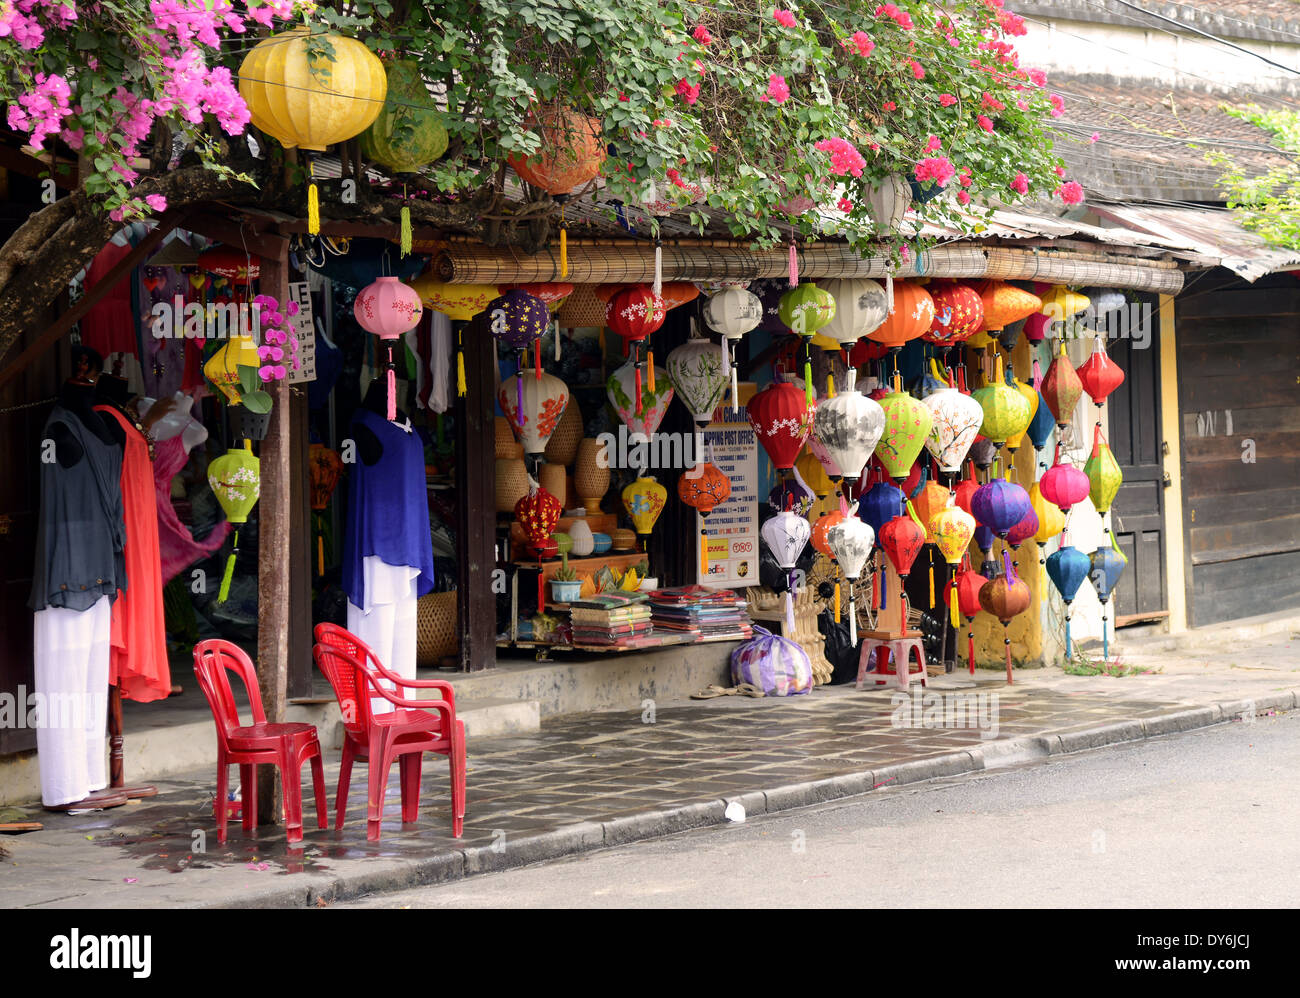 Geschäft mit Papierlaternen für das Laternenfest, Hoi an, Vietnam Stockfoto